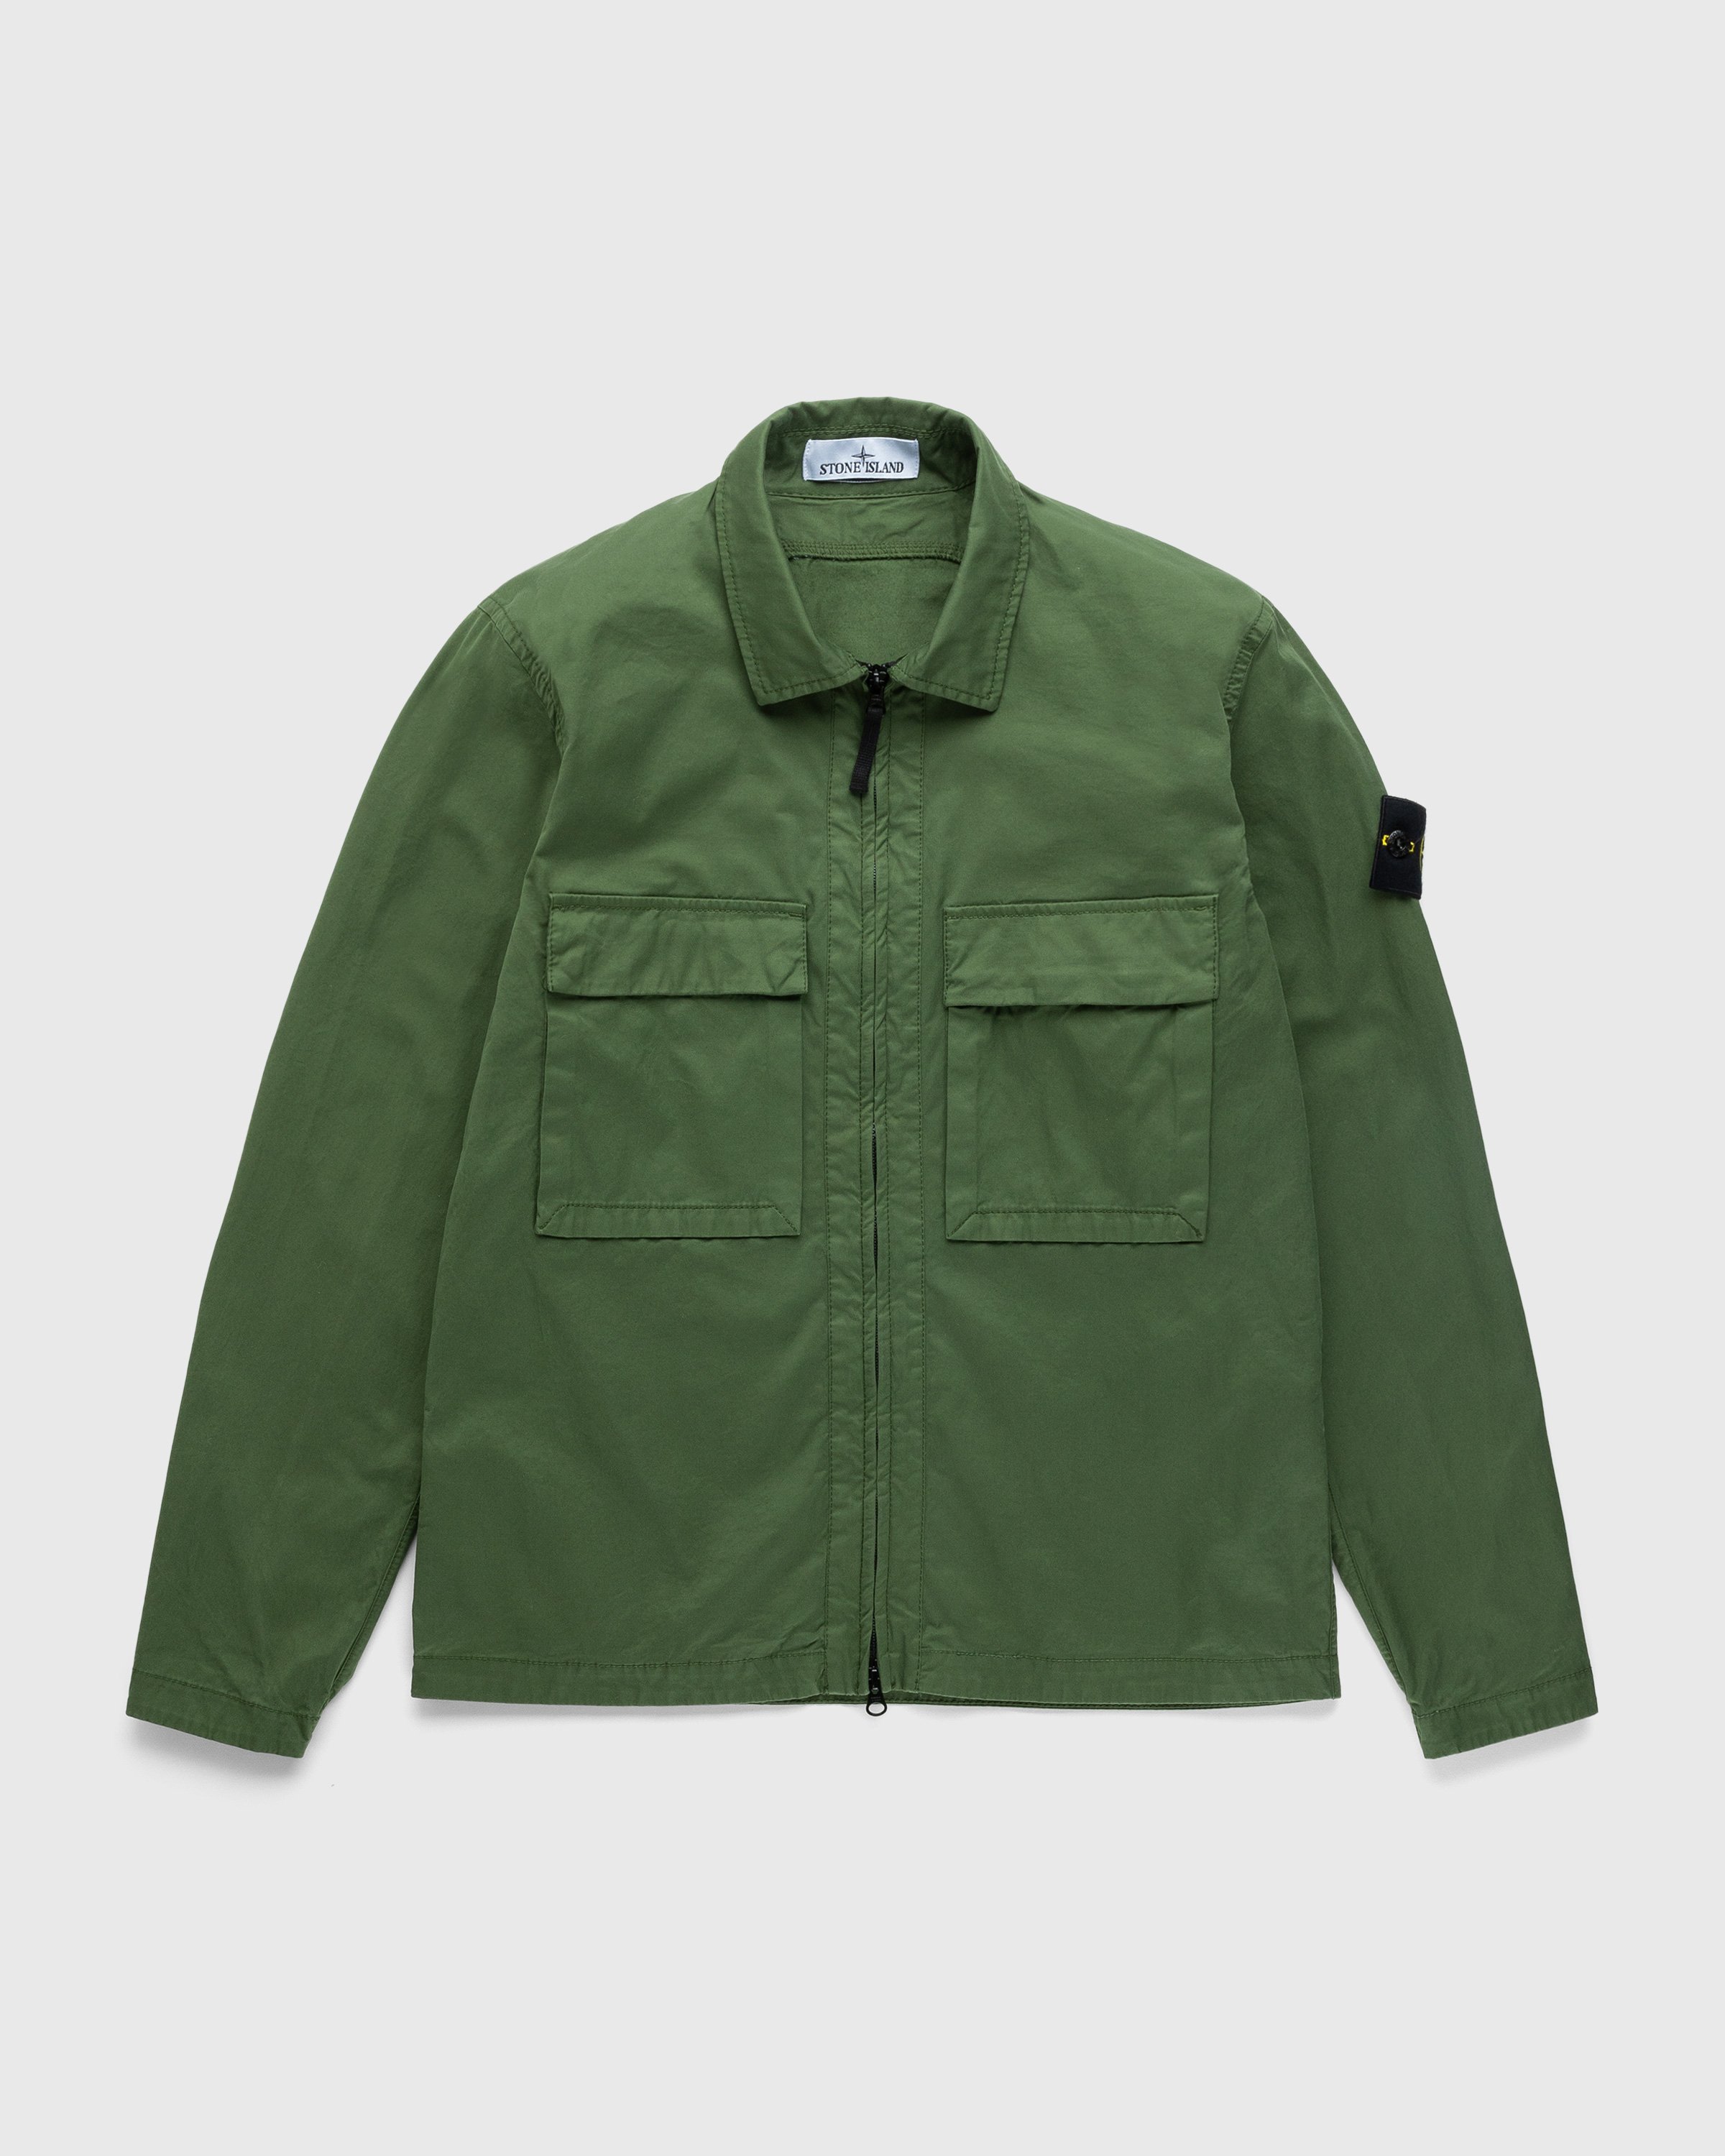 Stone Island - Garment-Dyed Cotton Overshirt Olive - Clothing - Green - Image 1